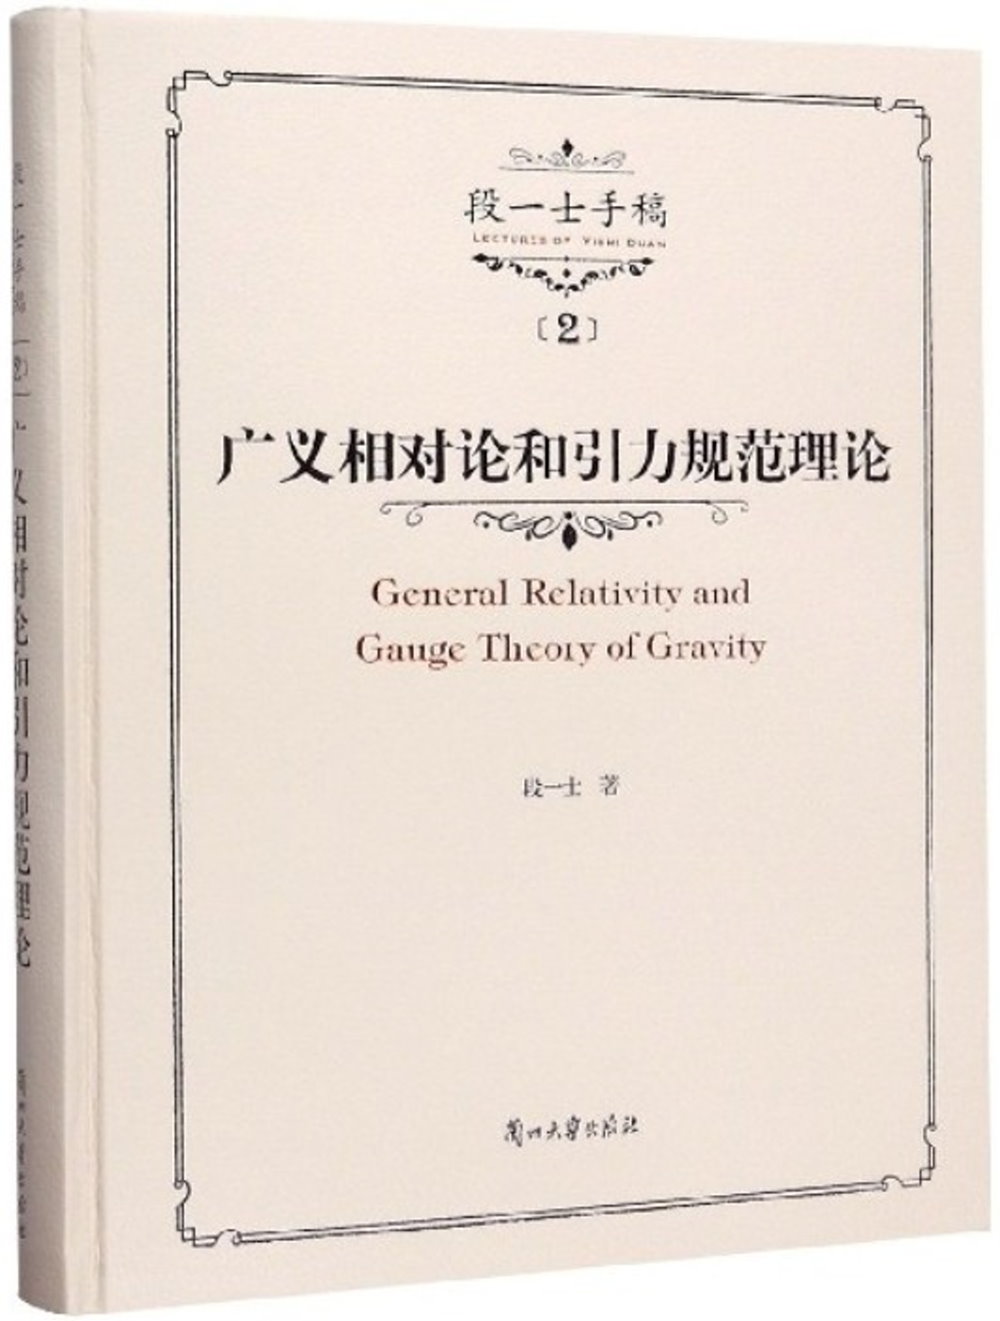 段一士手稿（2）：廣義相對論和引力規範理論講義